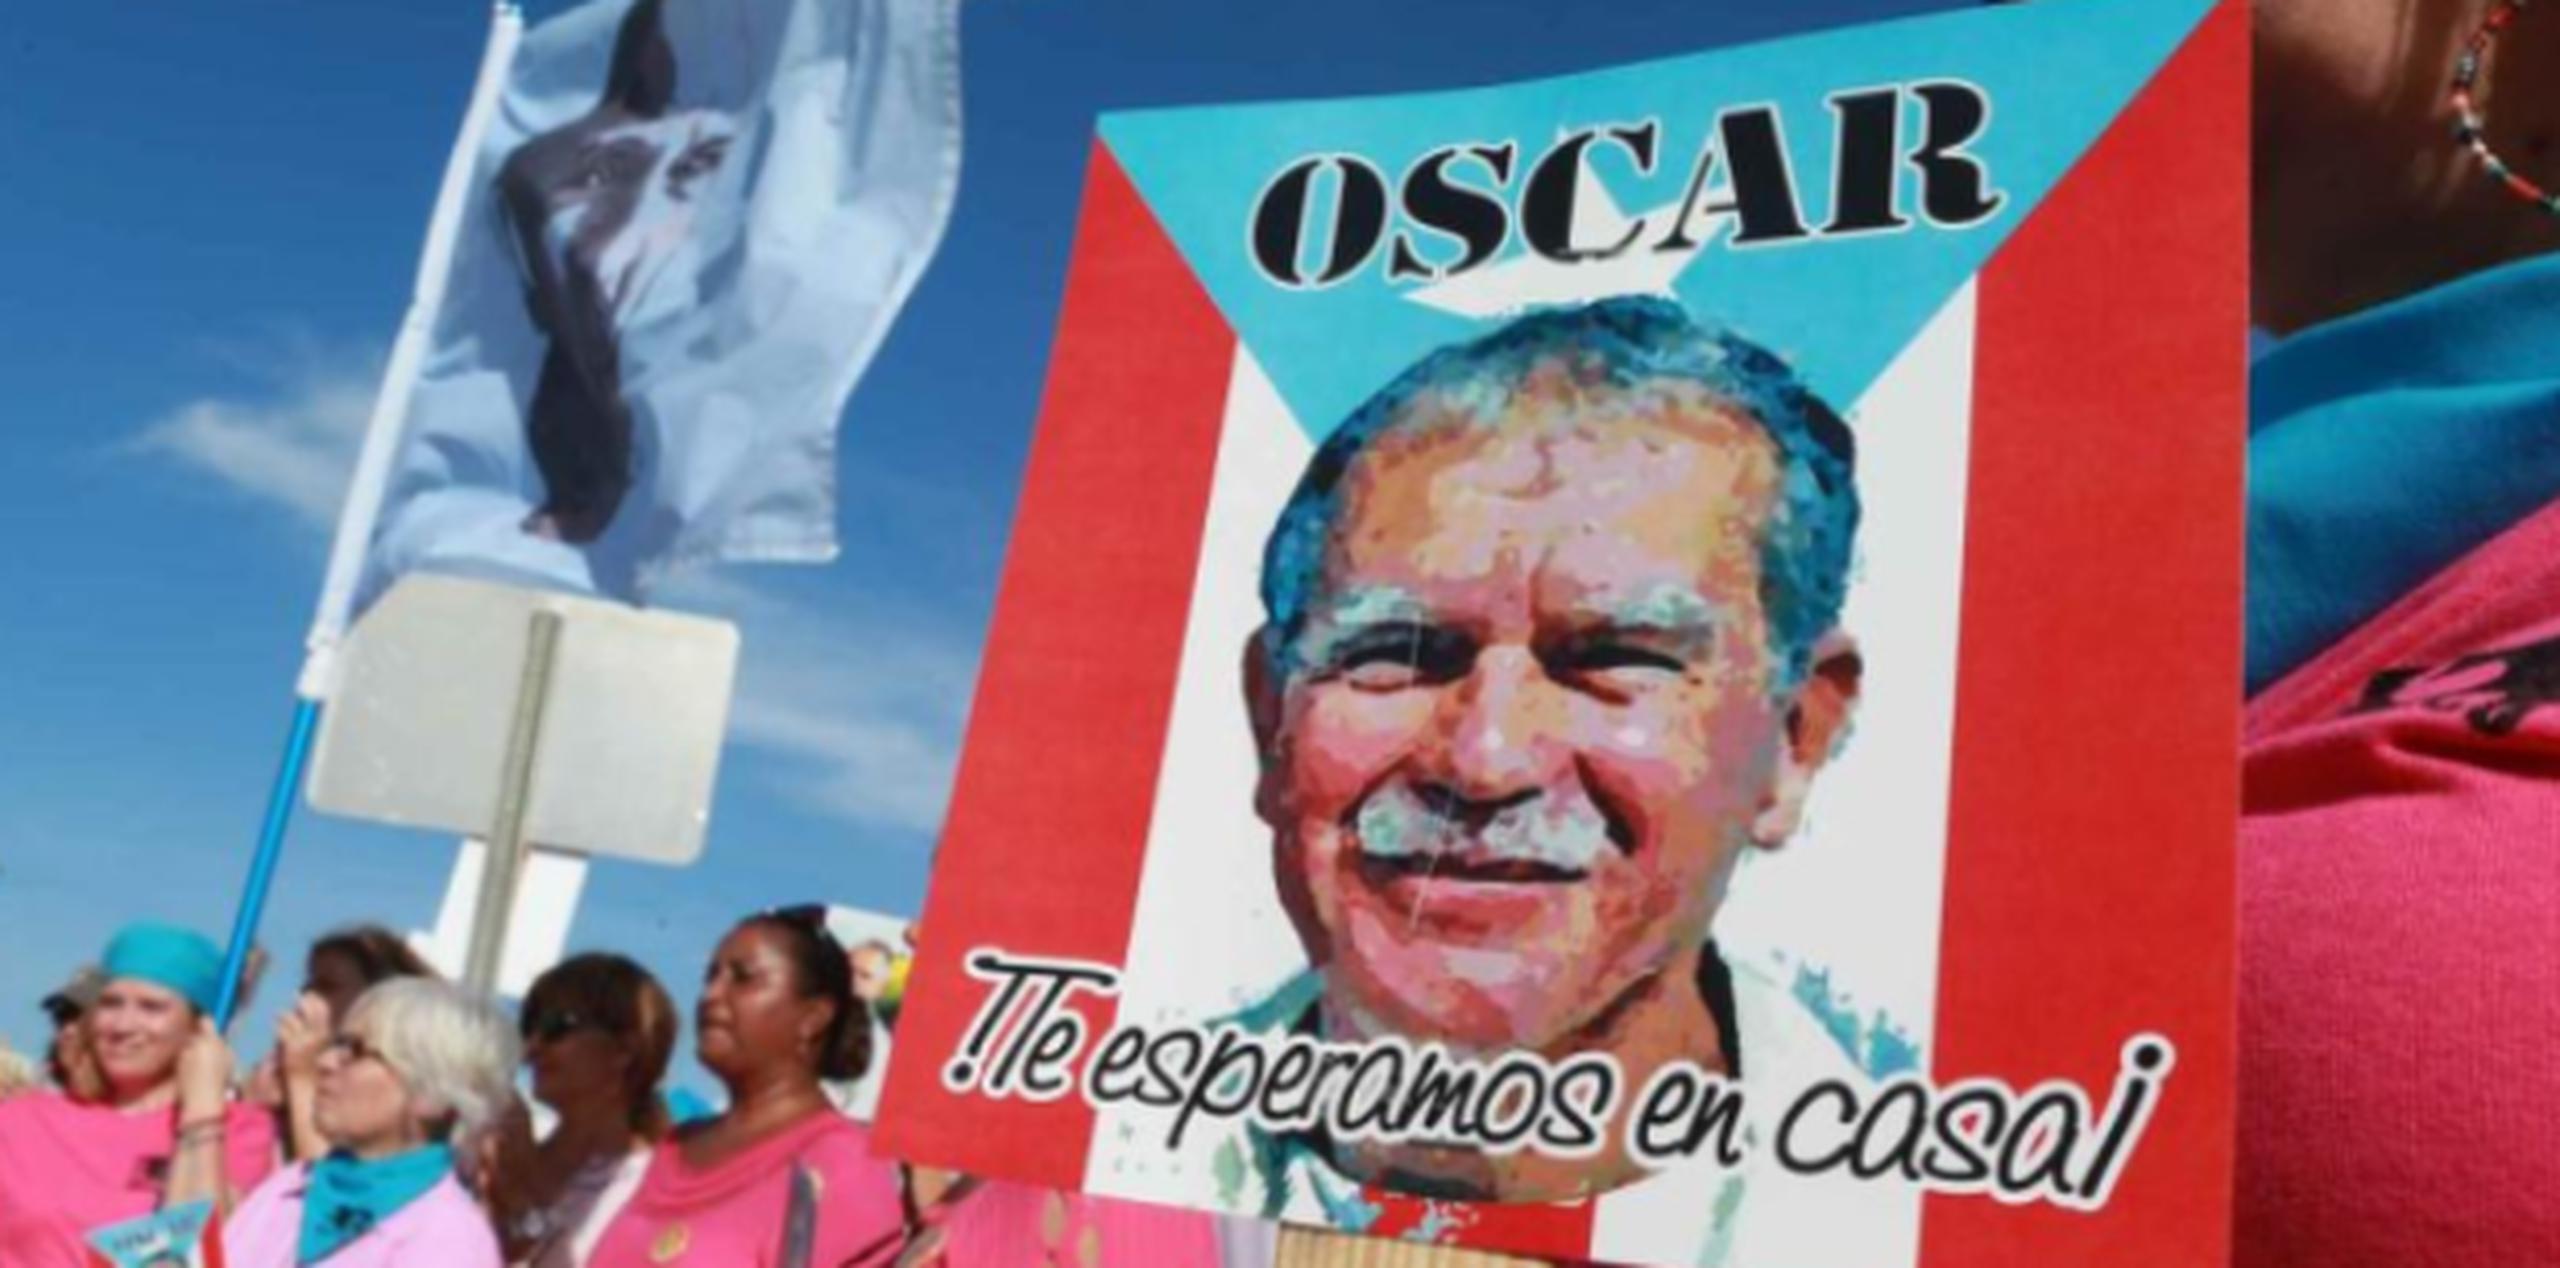 López Rivera, de 74 años, lleva 35 años preso por conspiración sediciosa. (Archivo)